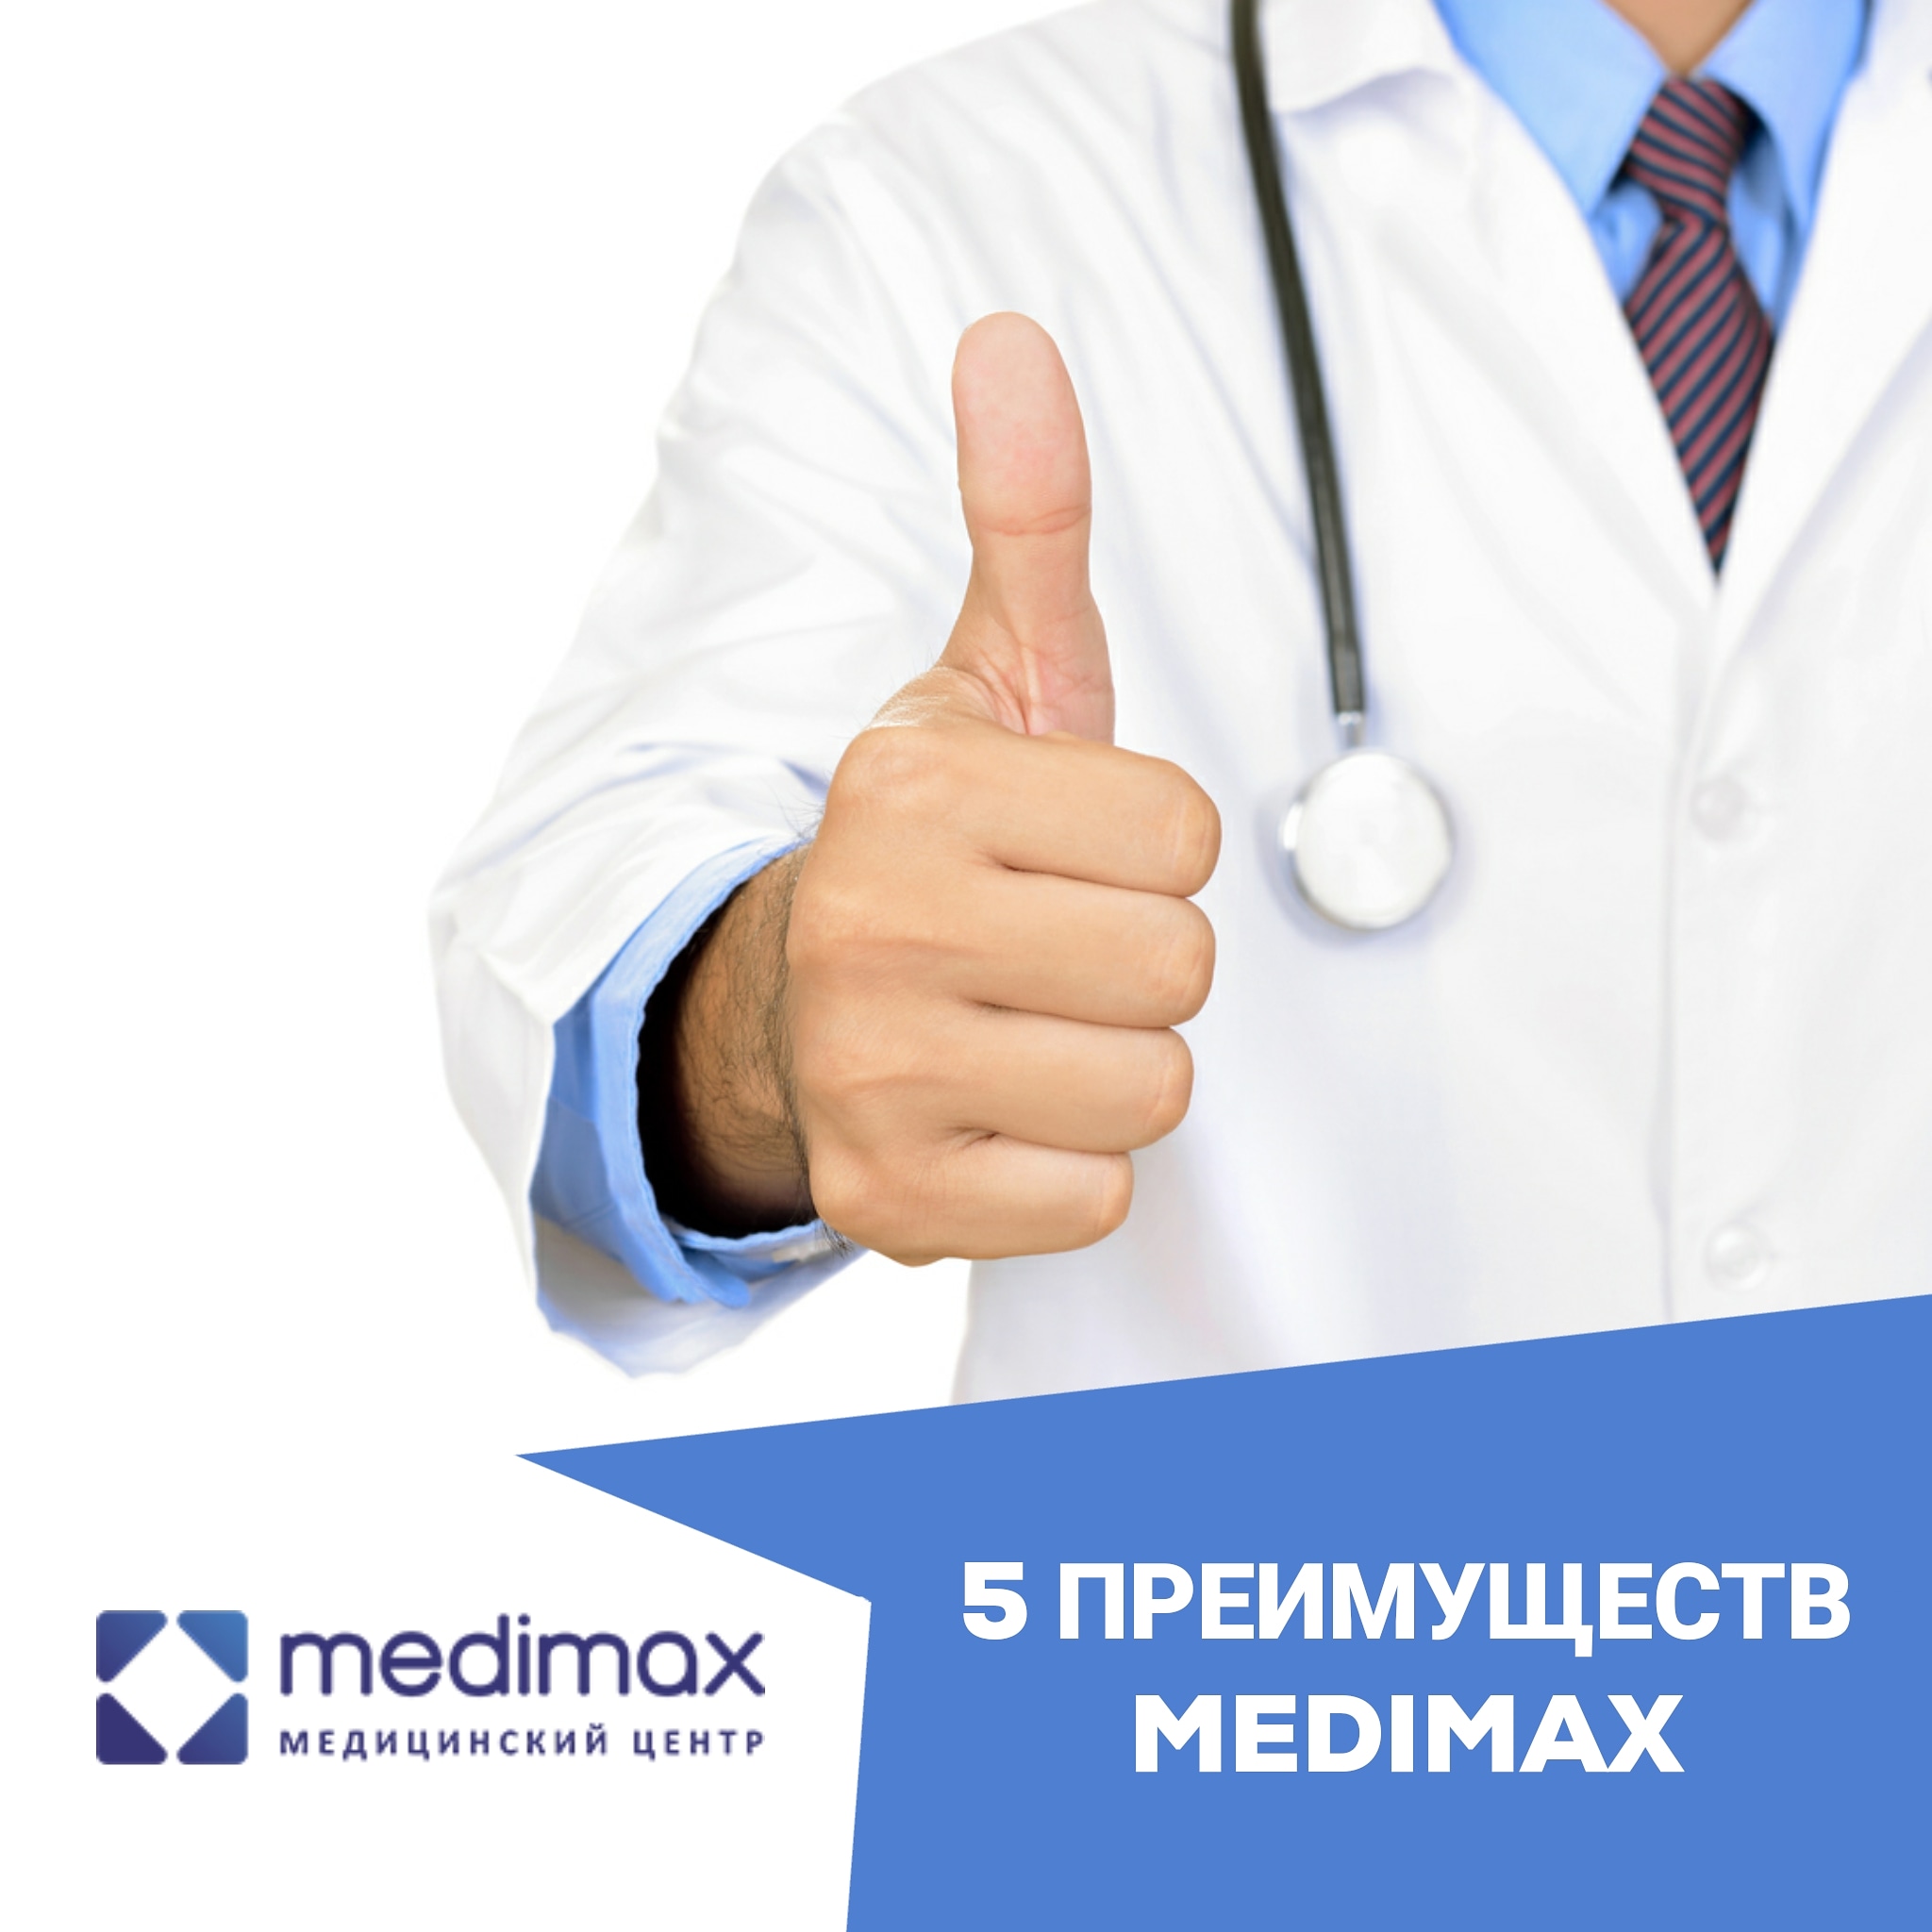 5 преимуществ Medimax